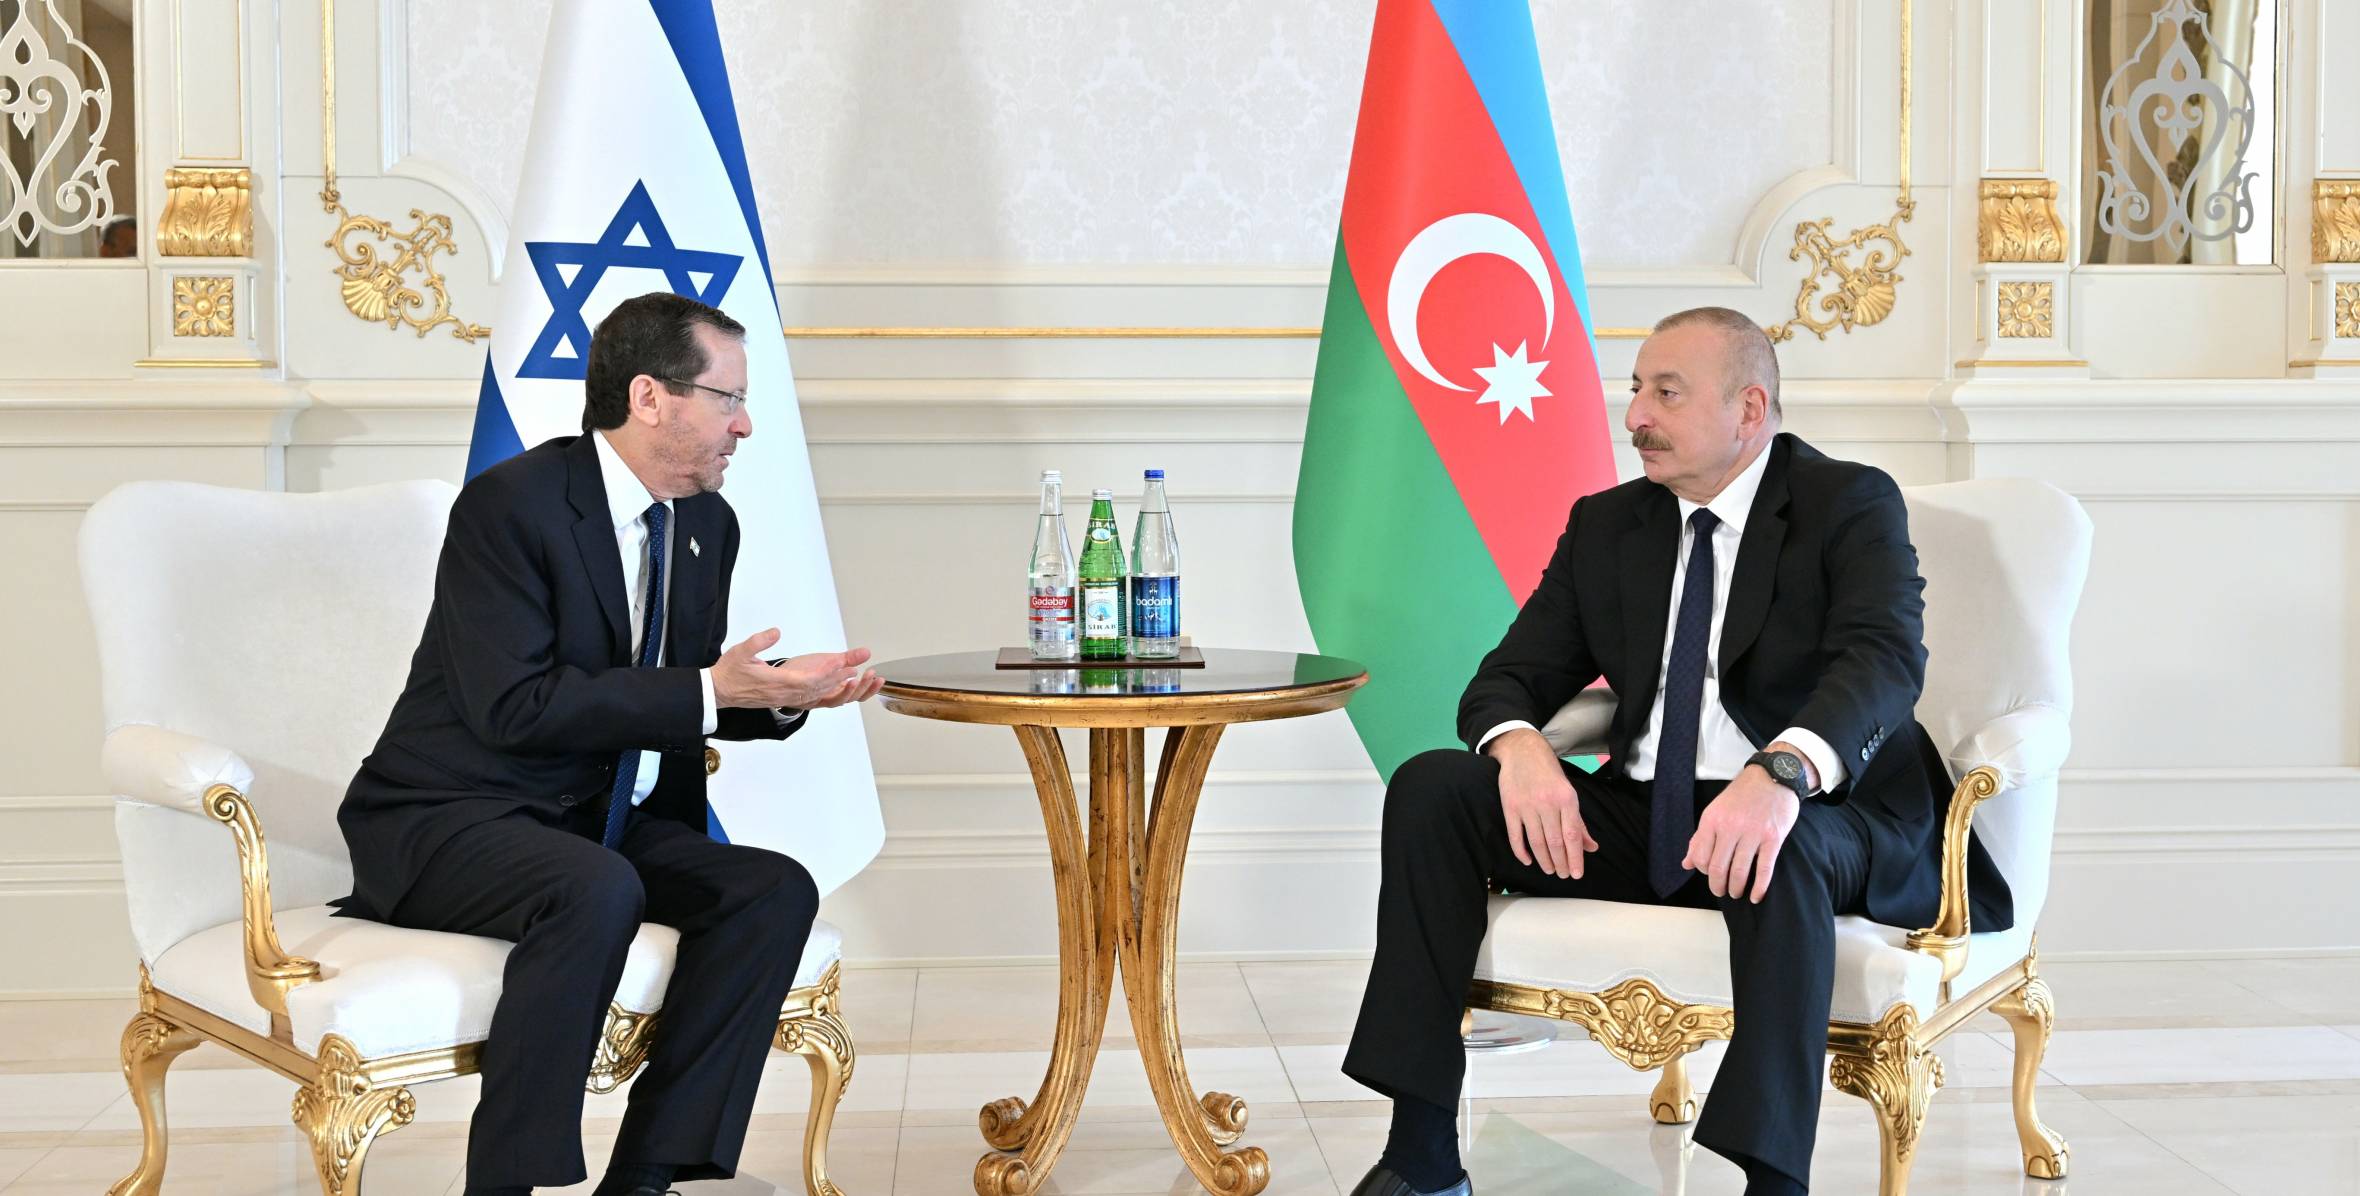 Состоялась встреча президентов Азербайджана и Израиля один на один